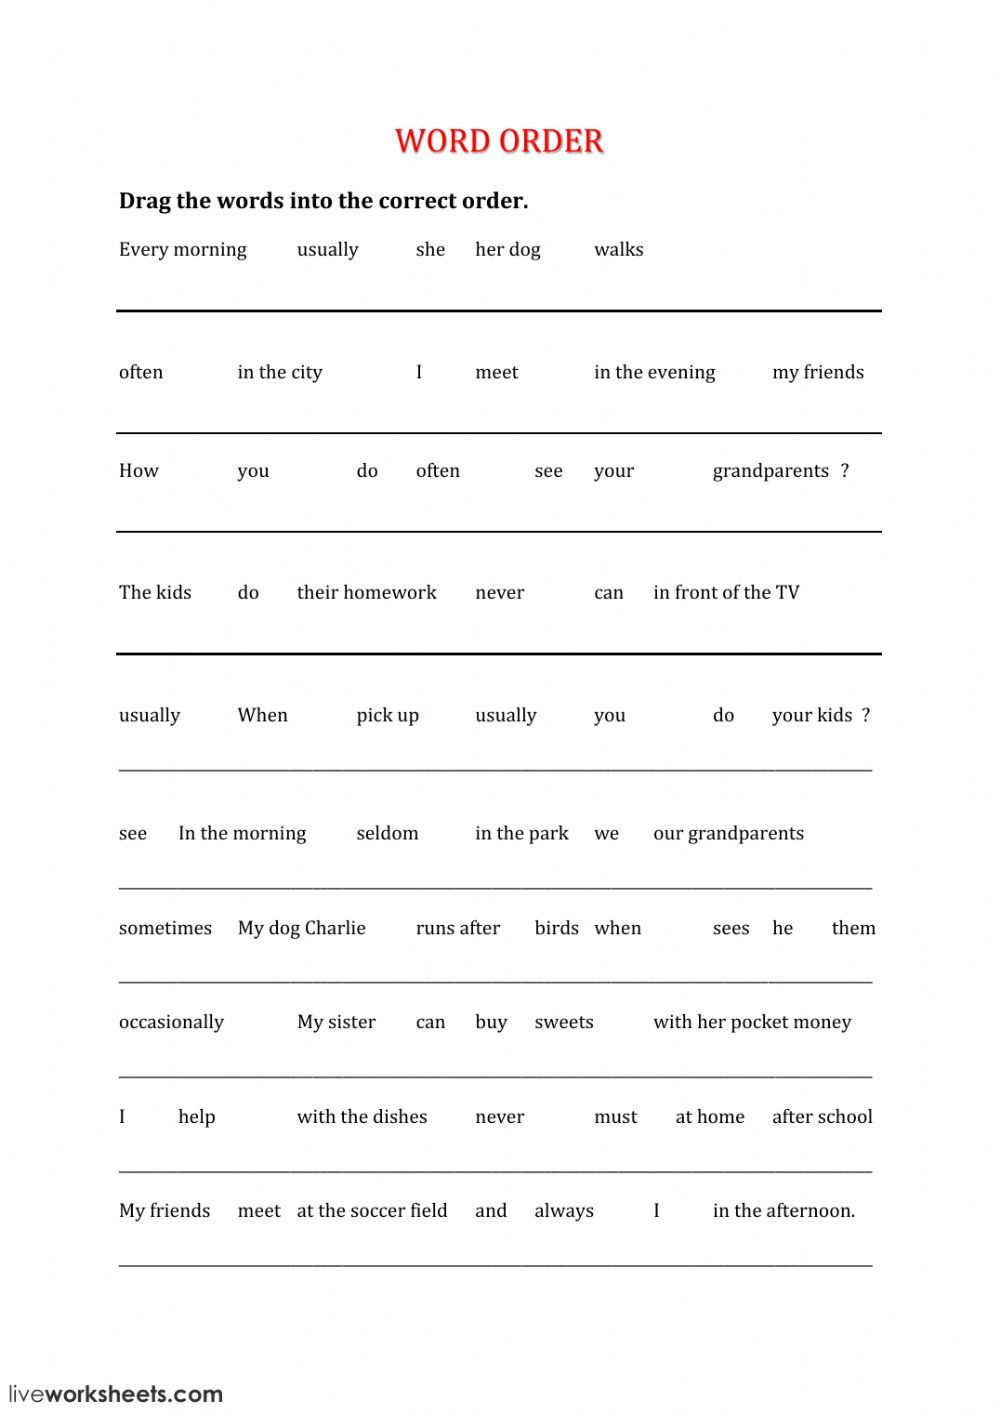 adverbs-of-frequency-workplace-skills-worksheets-adverbworksheets